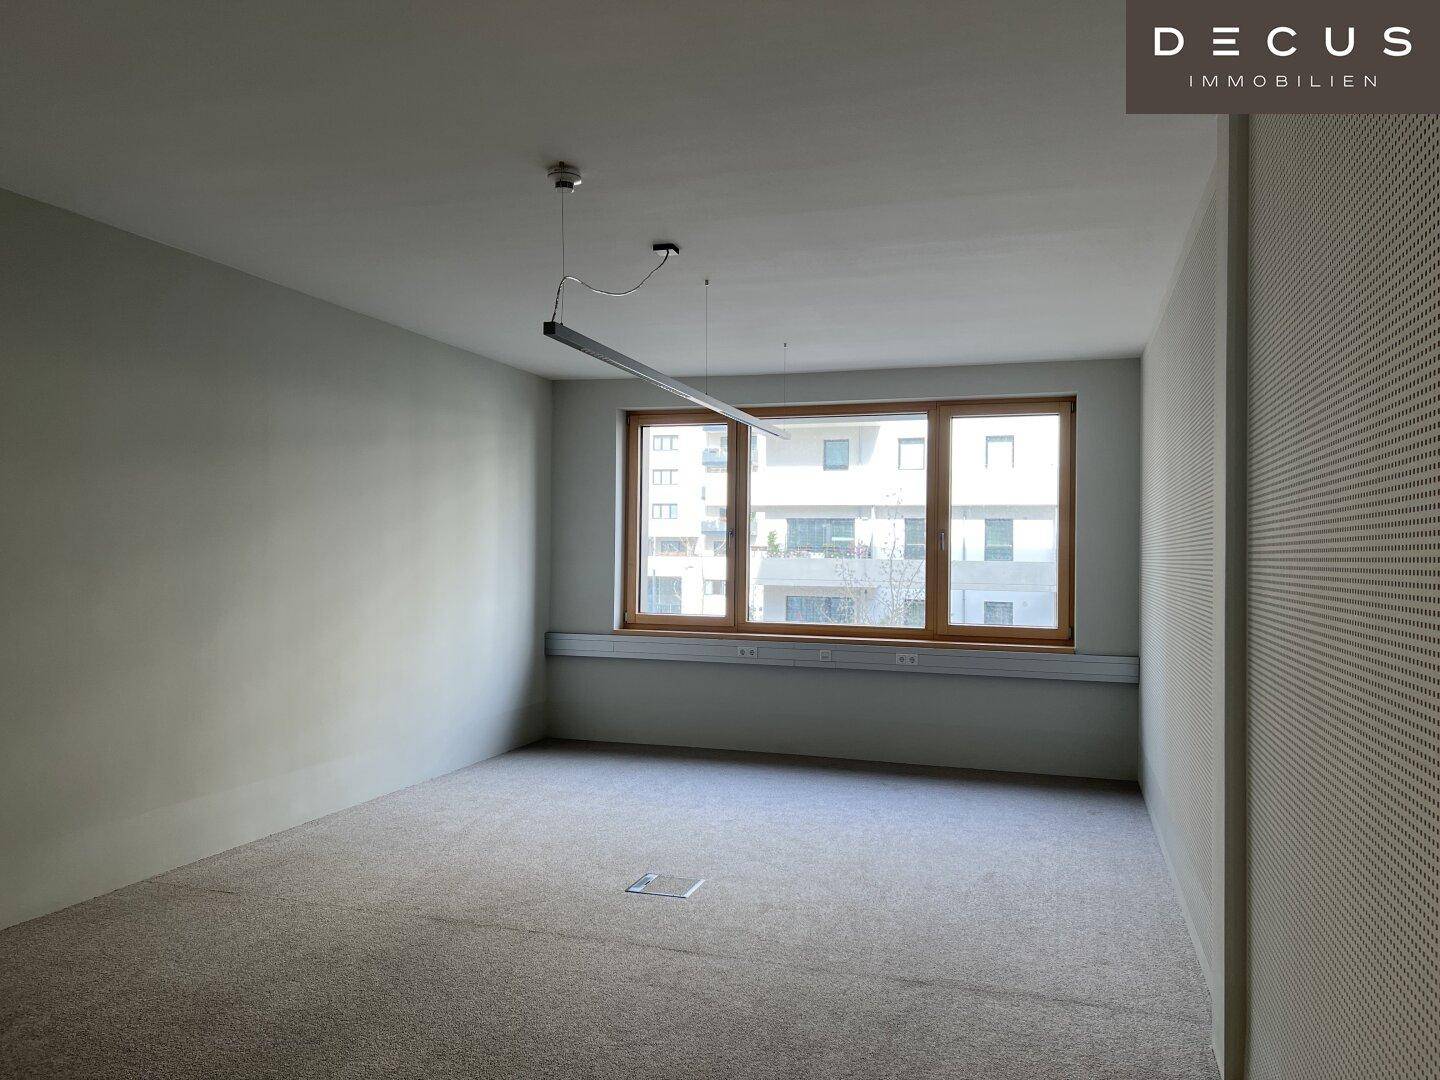 Büro mit Teppichboden - Beispiel